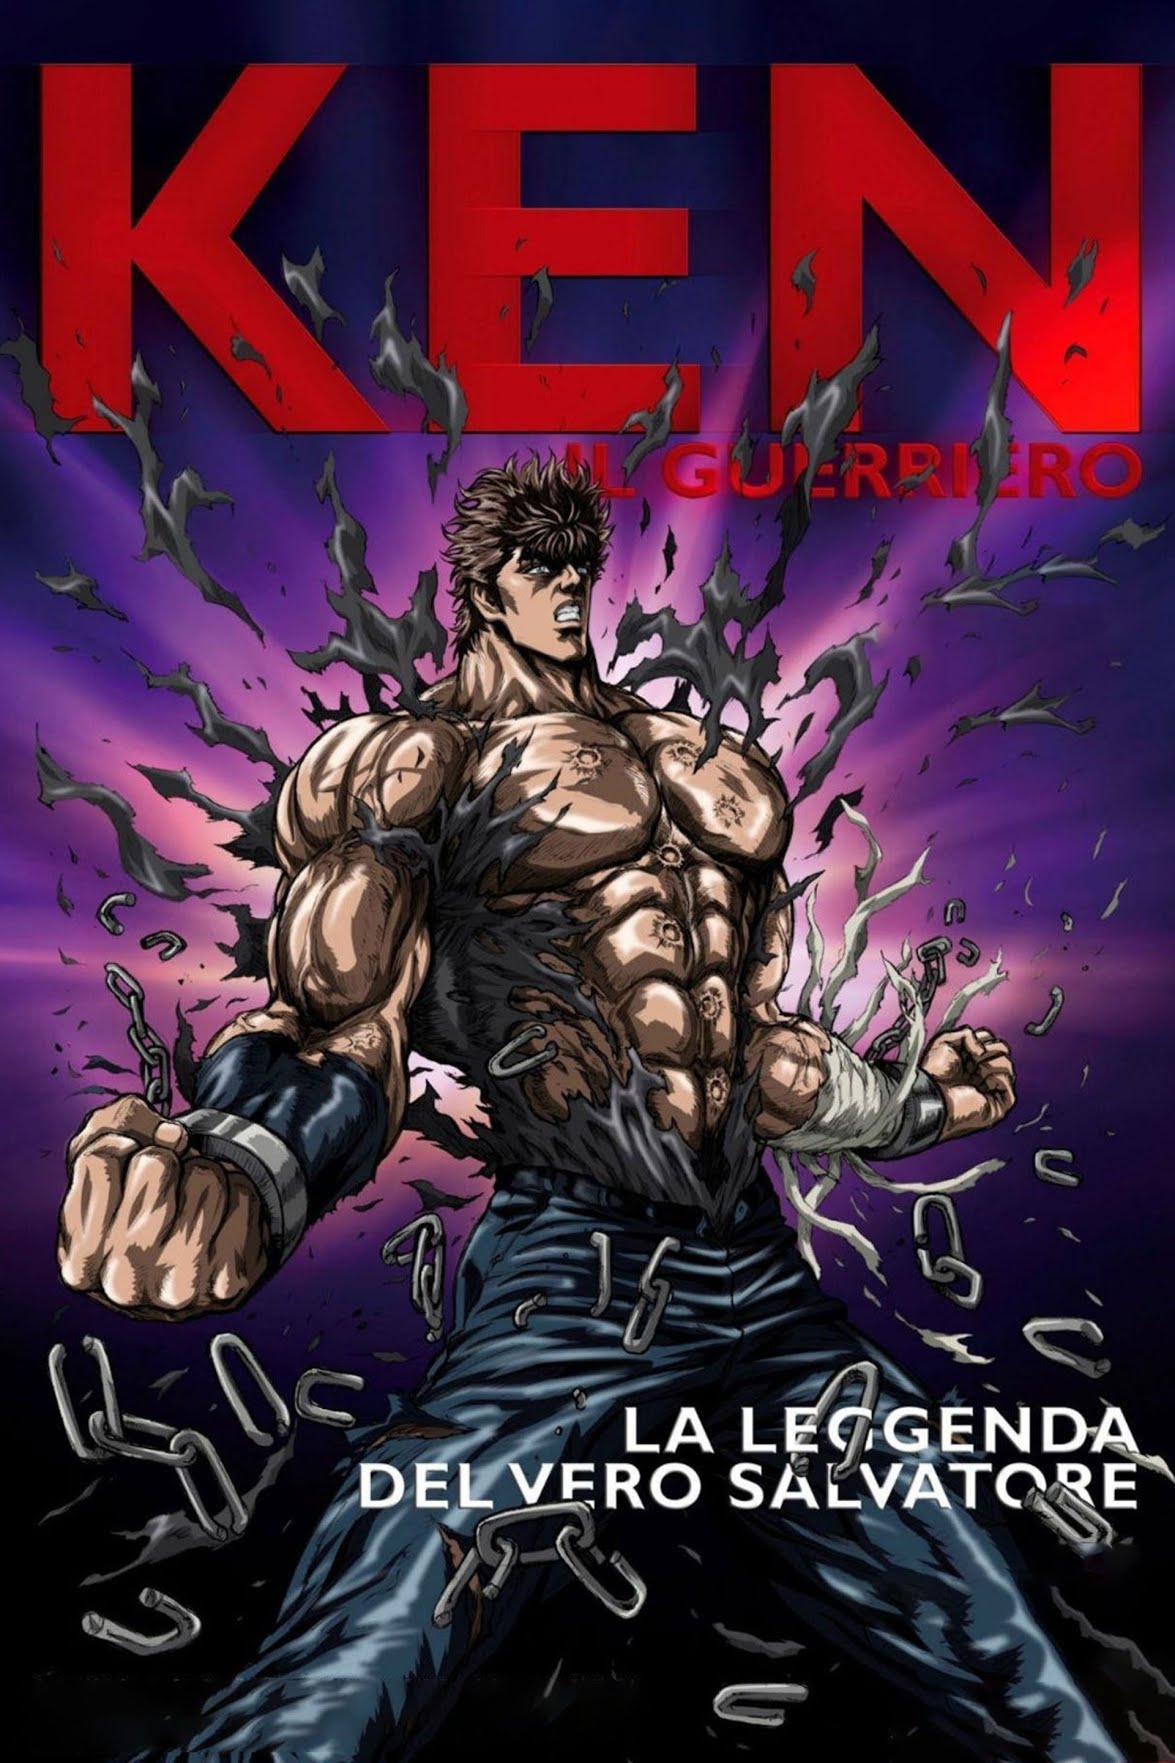 Ken il Guerriero – La leggenda del vero salvatore [HD] (2011)